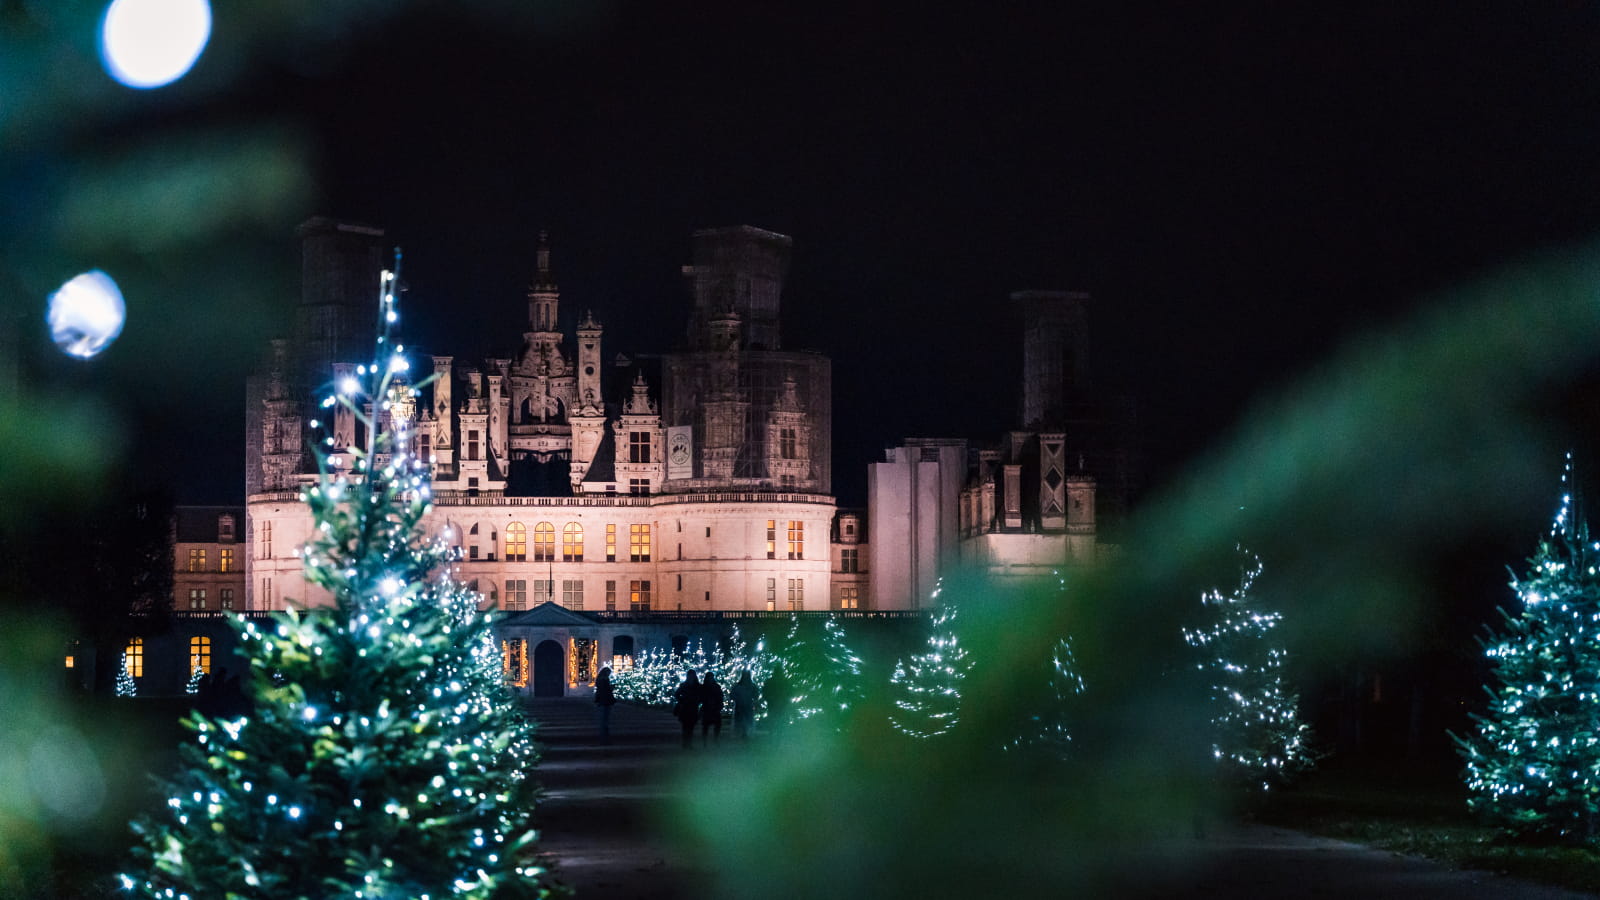 Noël au château de Chambord ©Marie Morin-Perspectives de voyage